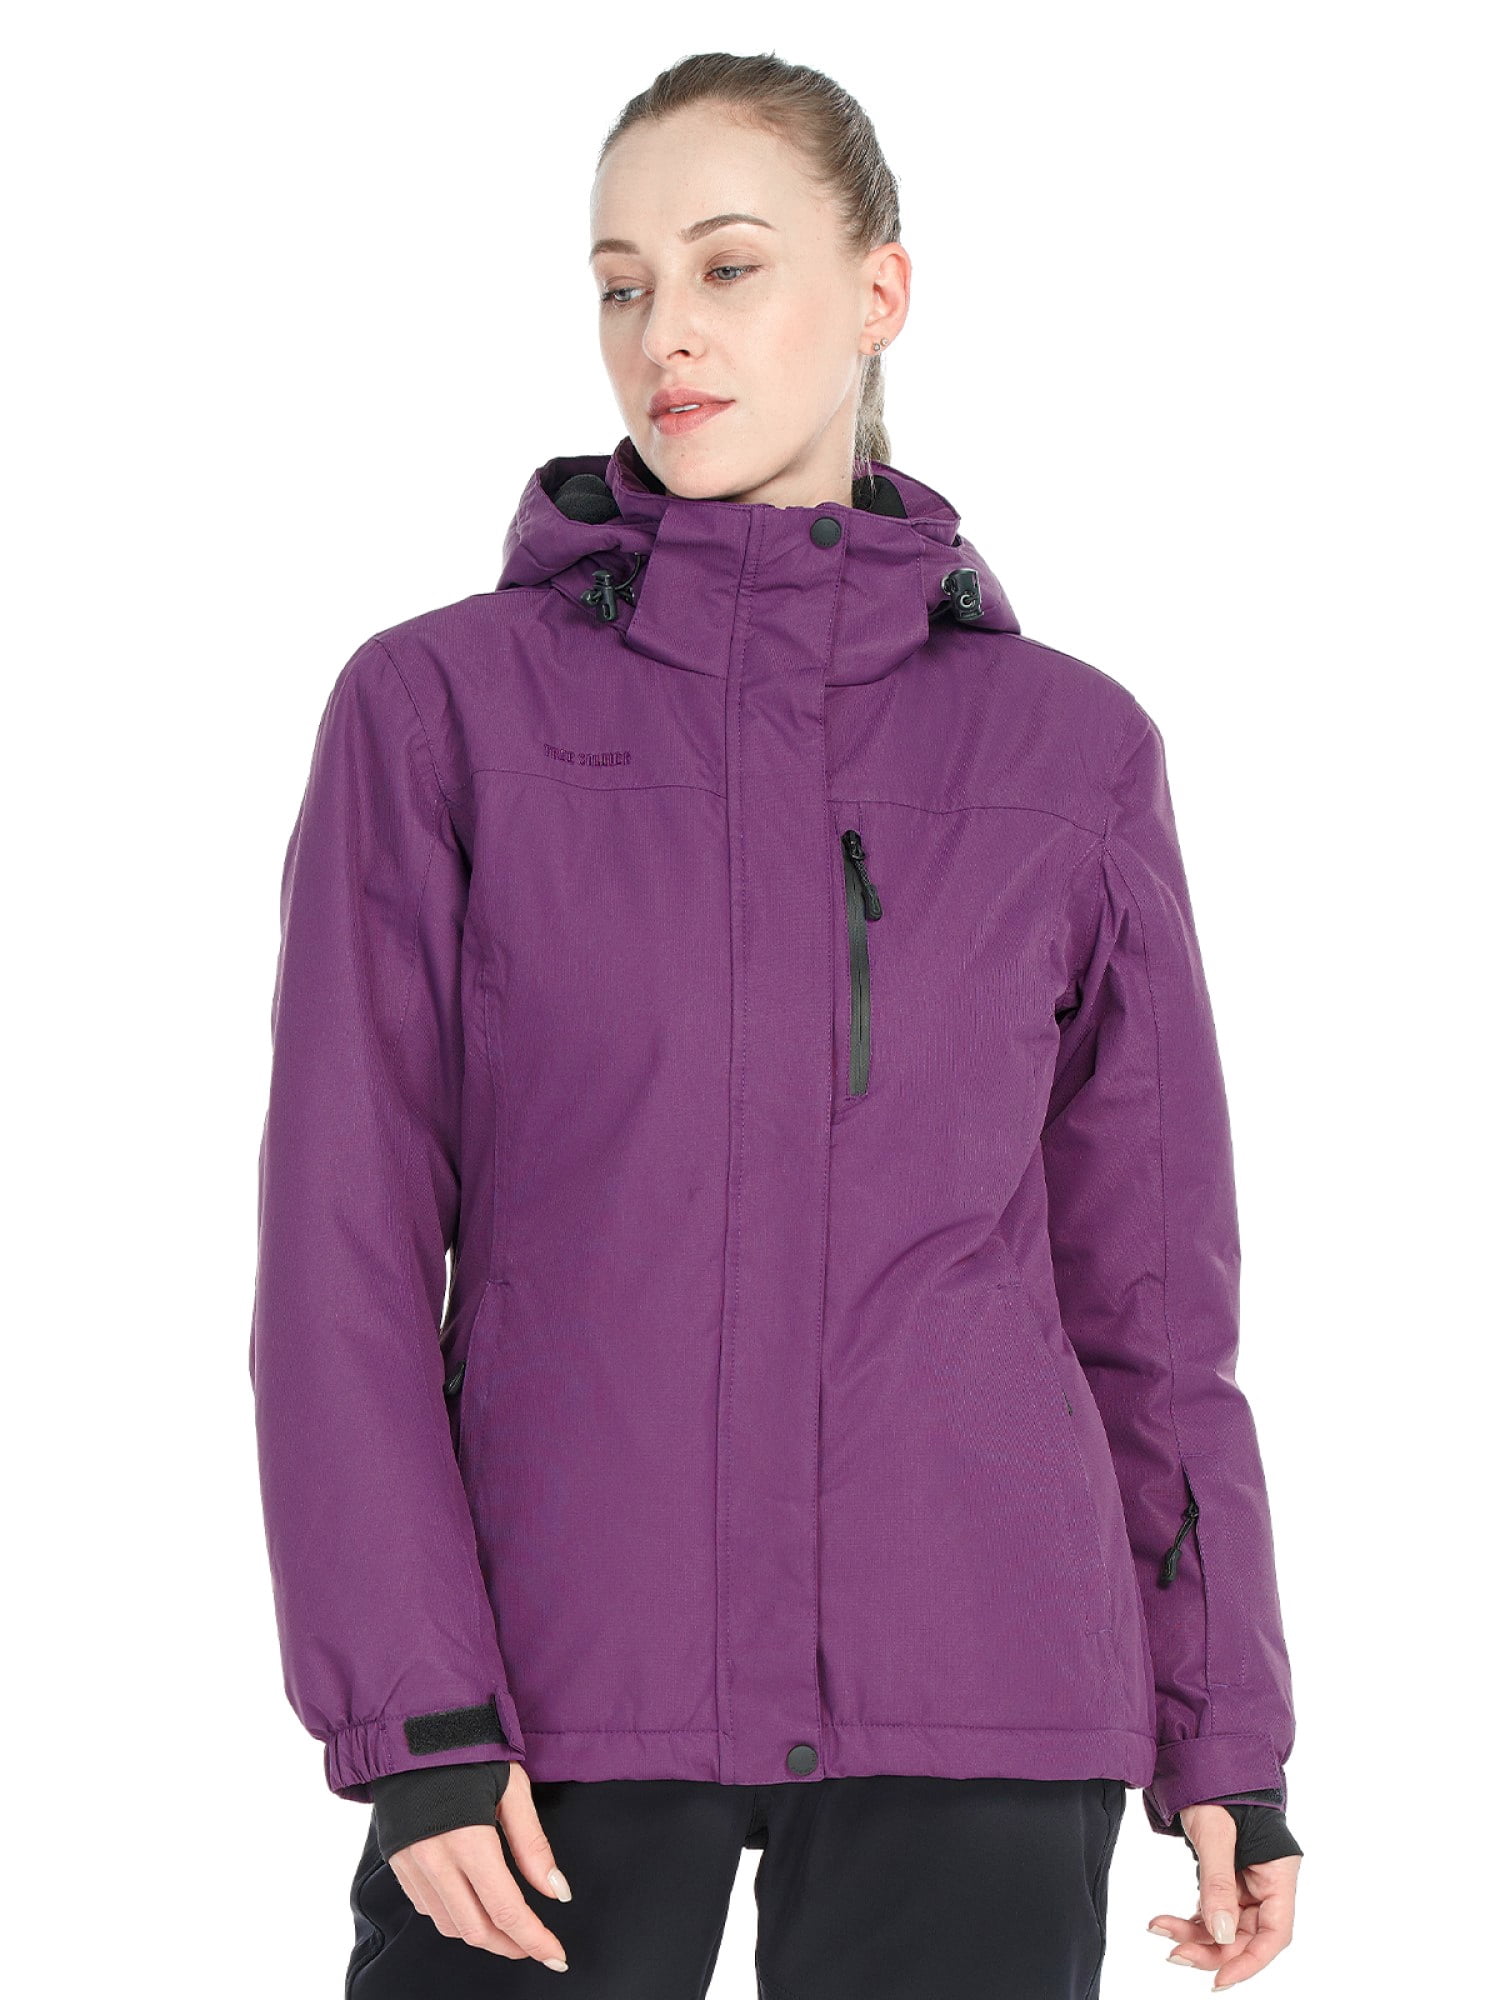 FREE SOLDIER Women's Waterproof Ski Snow Jacket Fleece Lined Warm ...